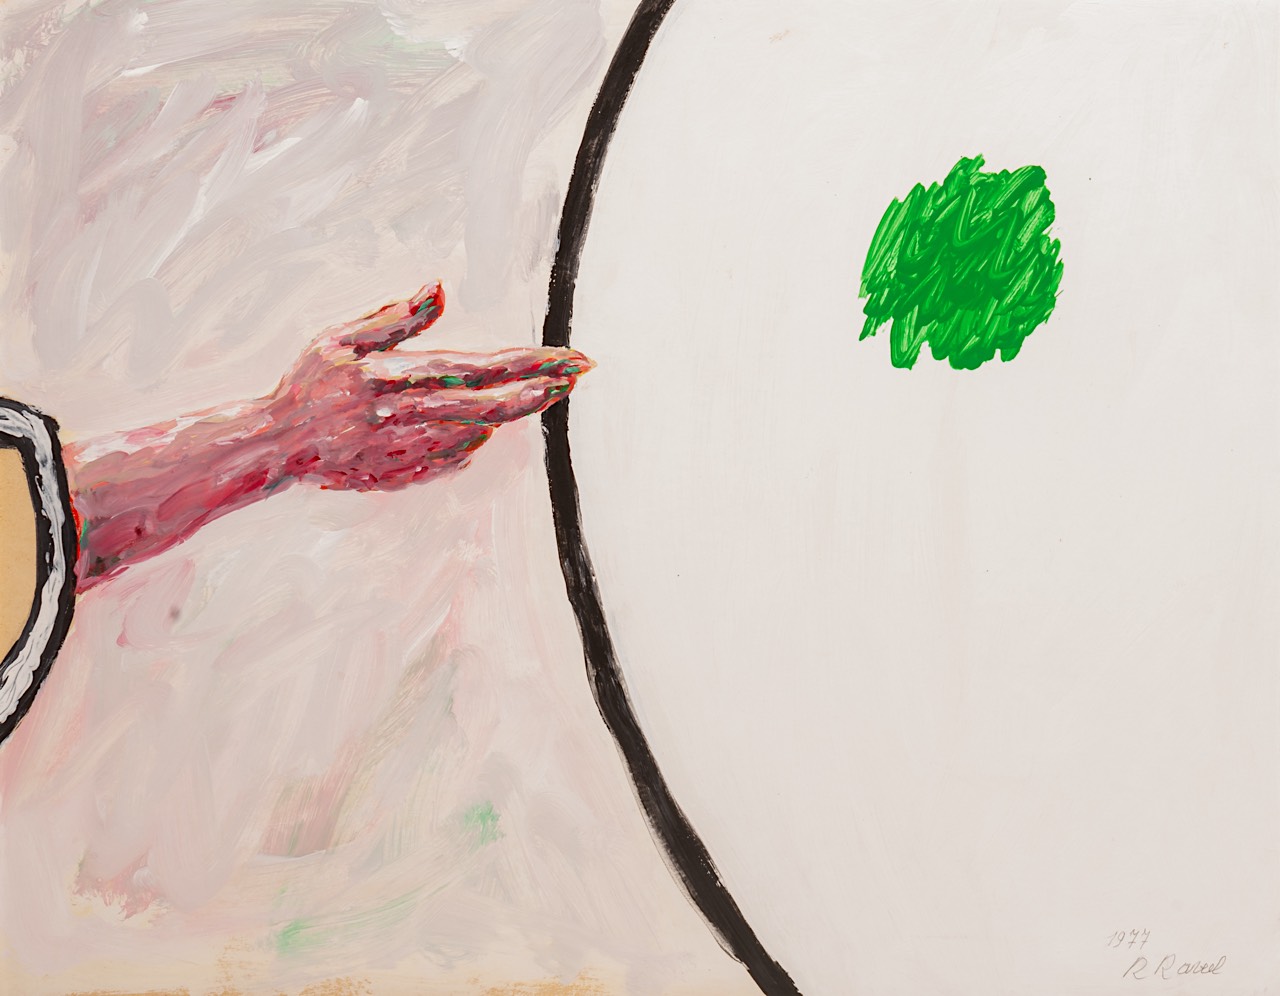 Roger Raveel (1921-2013), 'Een hand met een groene reflectie', 1977, acrylic on paper on canvas 57 x